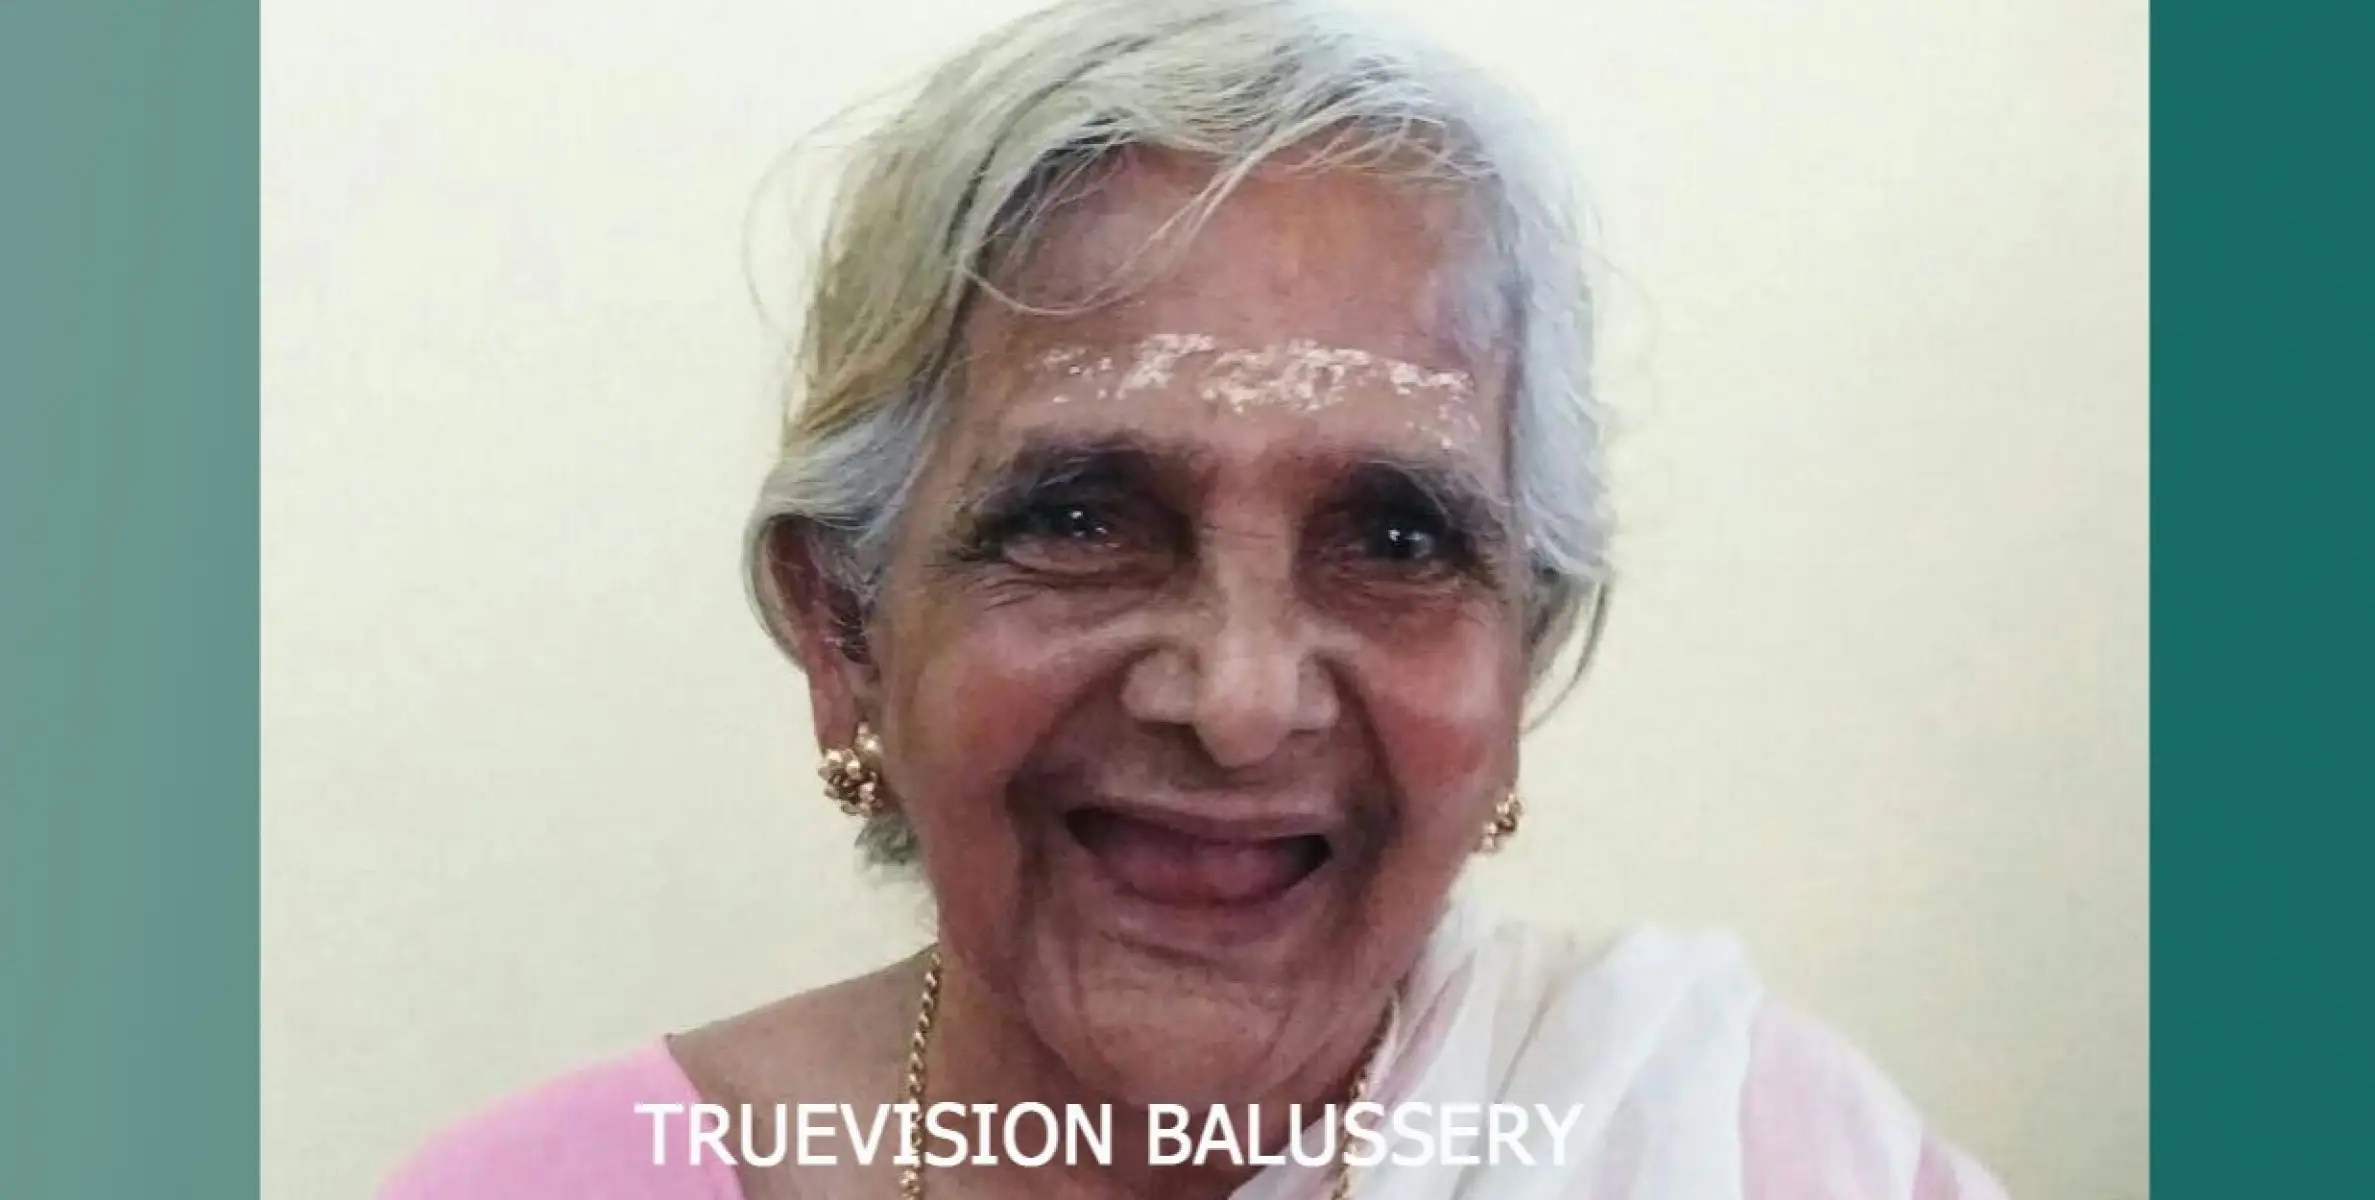 പുളിയിലോട്ട് ശ്രീദേവി ബ്രാഹ്‌മണിയമ്മ (92) അന്തരിച്ചു